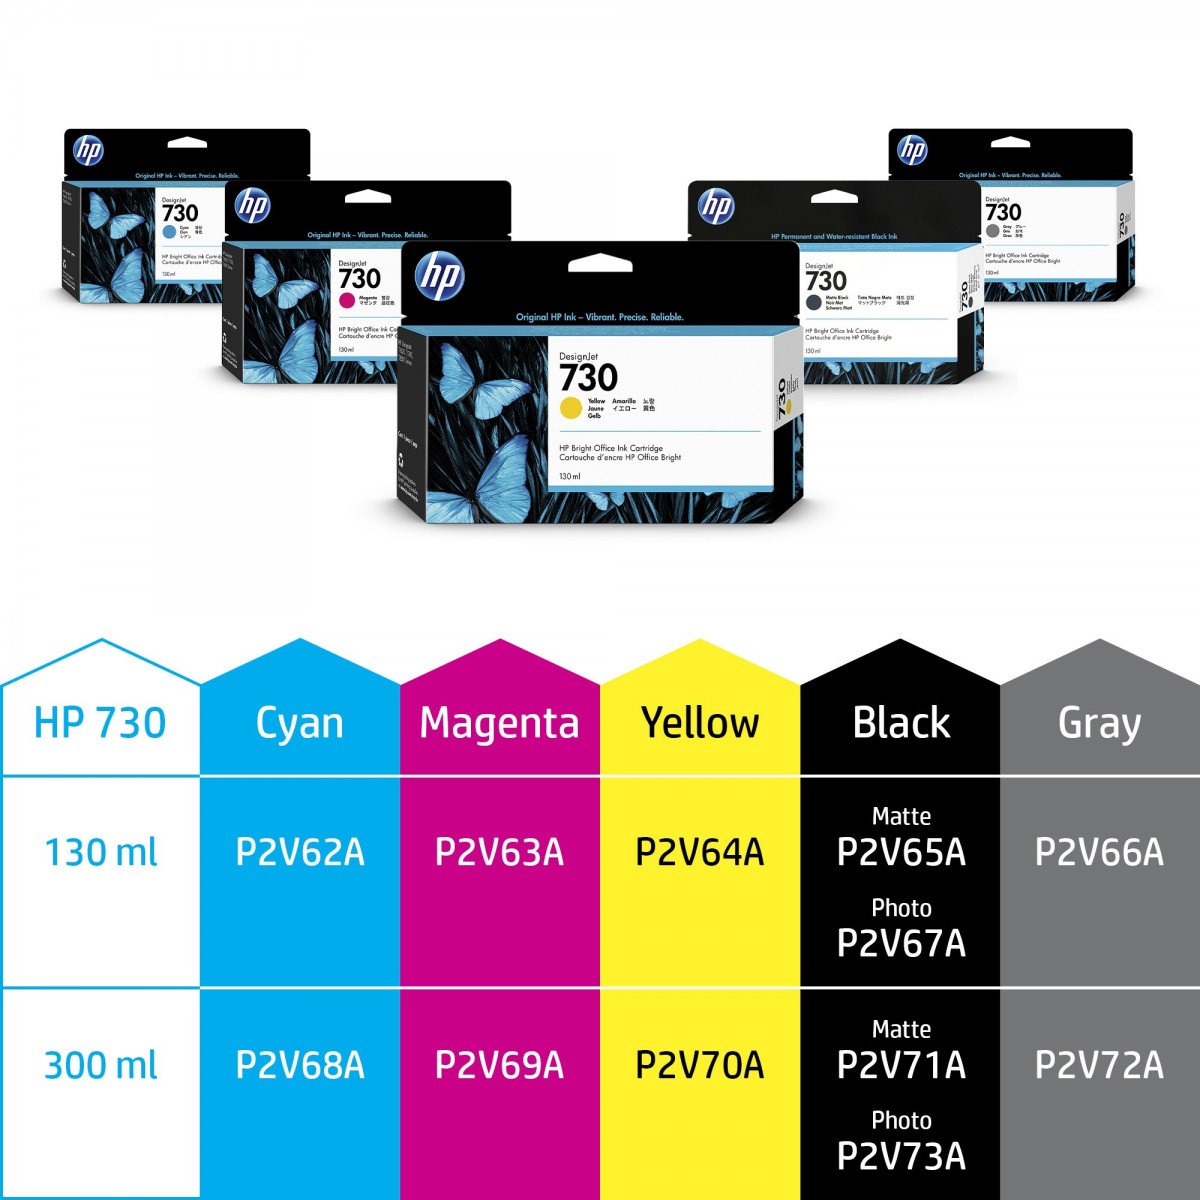 HP 730 300-ml Magenta DesignJet Ink Cartridge - Dye-based ink - 300 ml - 1 pc(s)